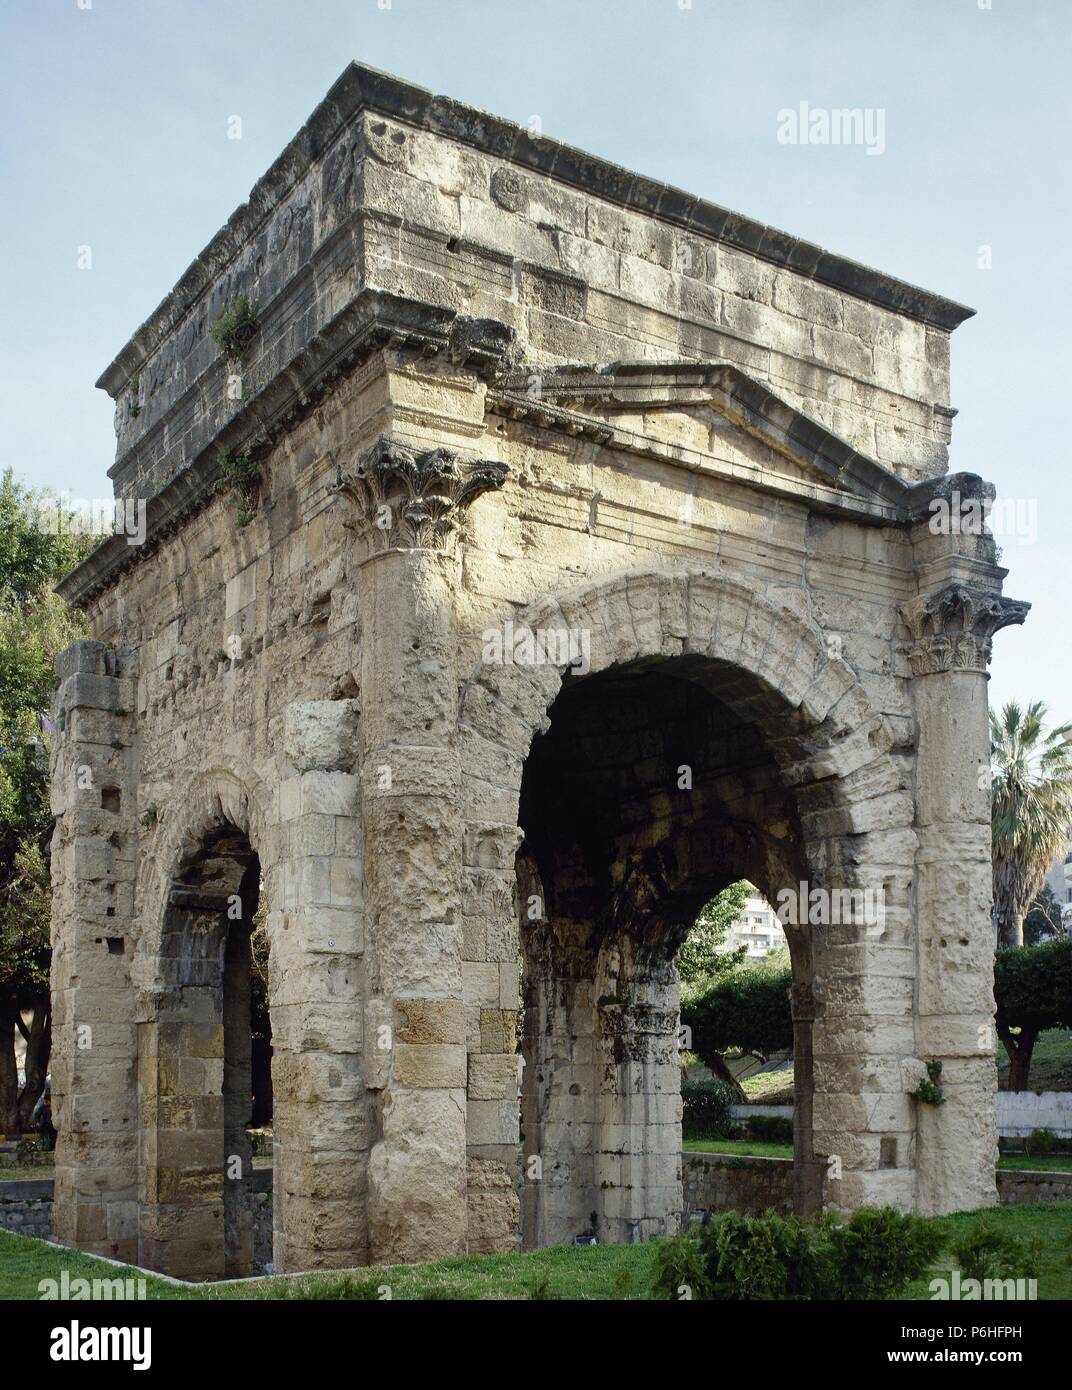 ARTE ROMANO. SIRIA. PORTICO ROMANO o TETRAPORTICUS de cuatro arcos. Construído hacia finales del siglo II. LATAKIA. Stock Photo